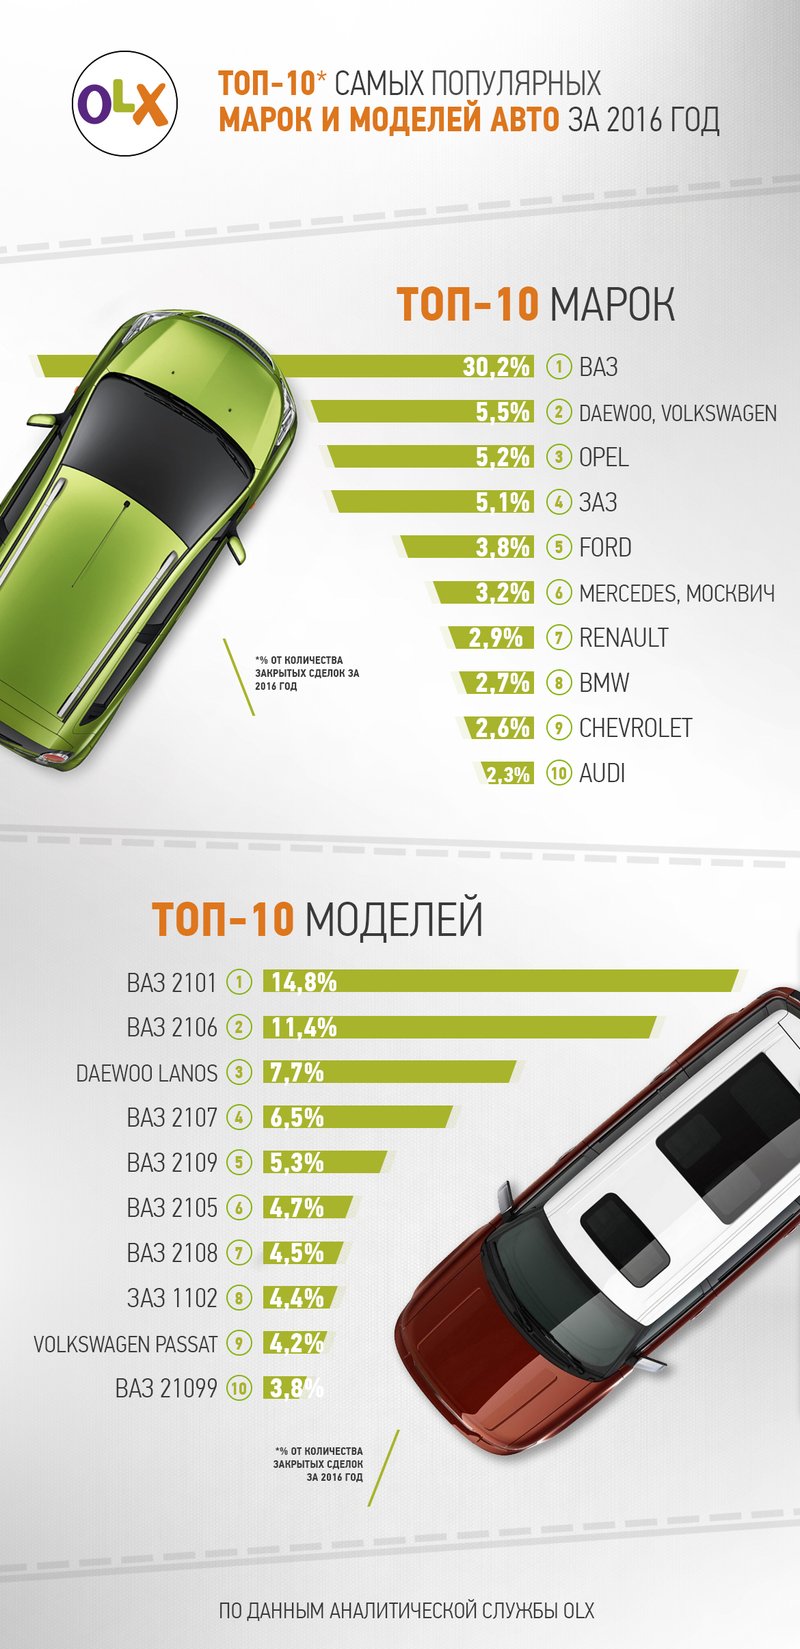 Какие б/у авто покупали украинцы в 2016 году. ТОП-10 марок и моделей по версии OLX